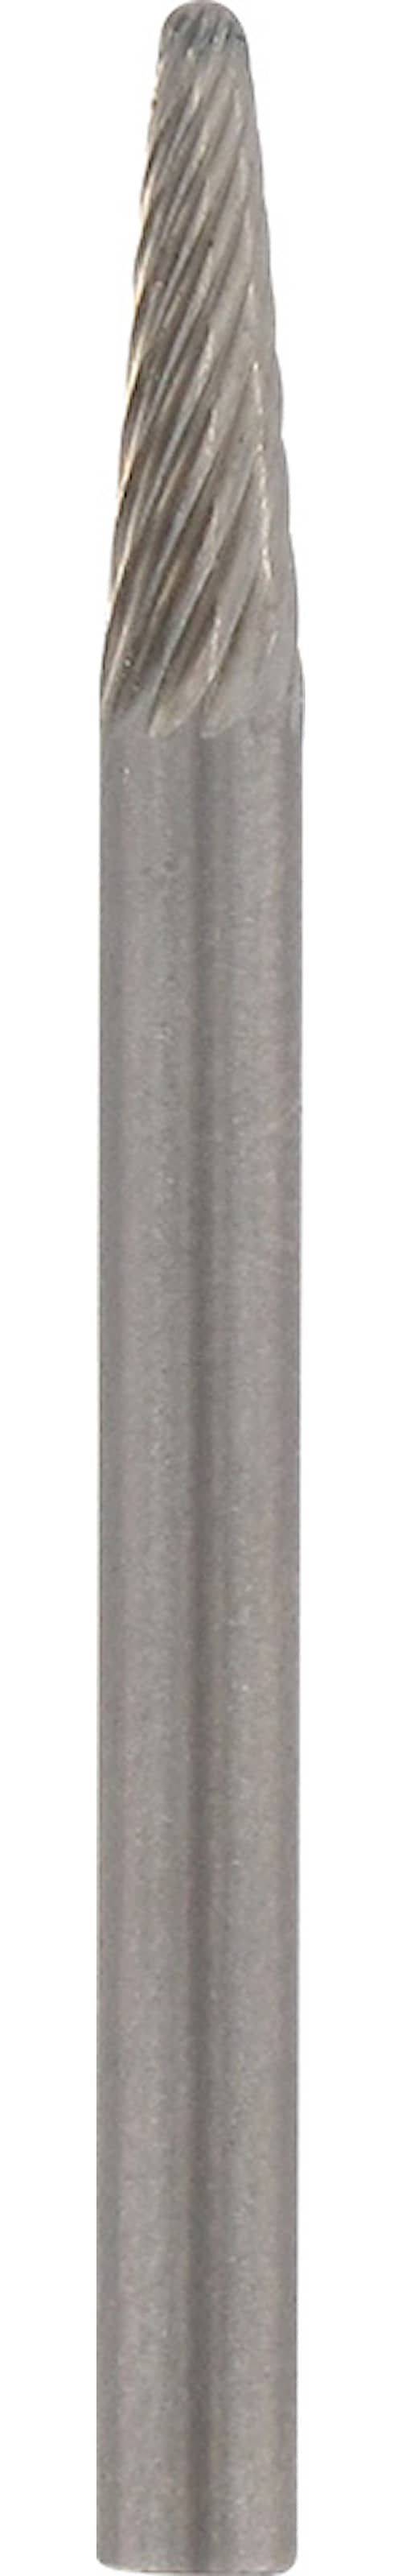 Dremel slibestift karbid 3,2 mm hårdmetal 9910